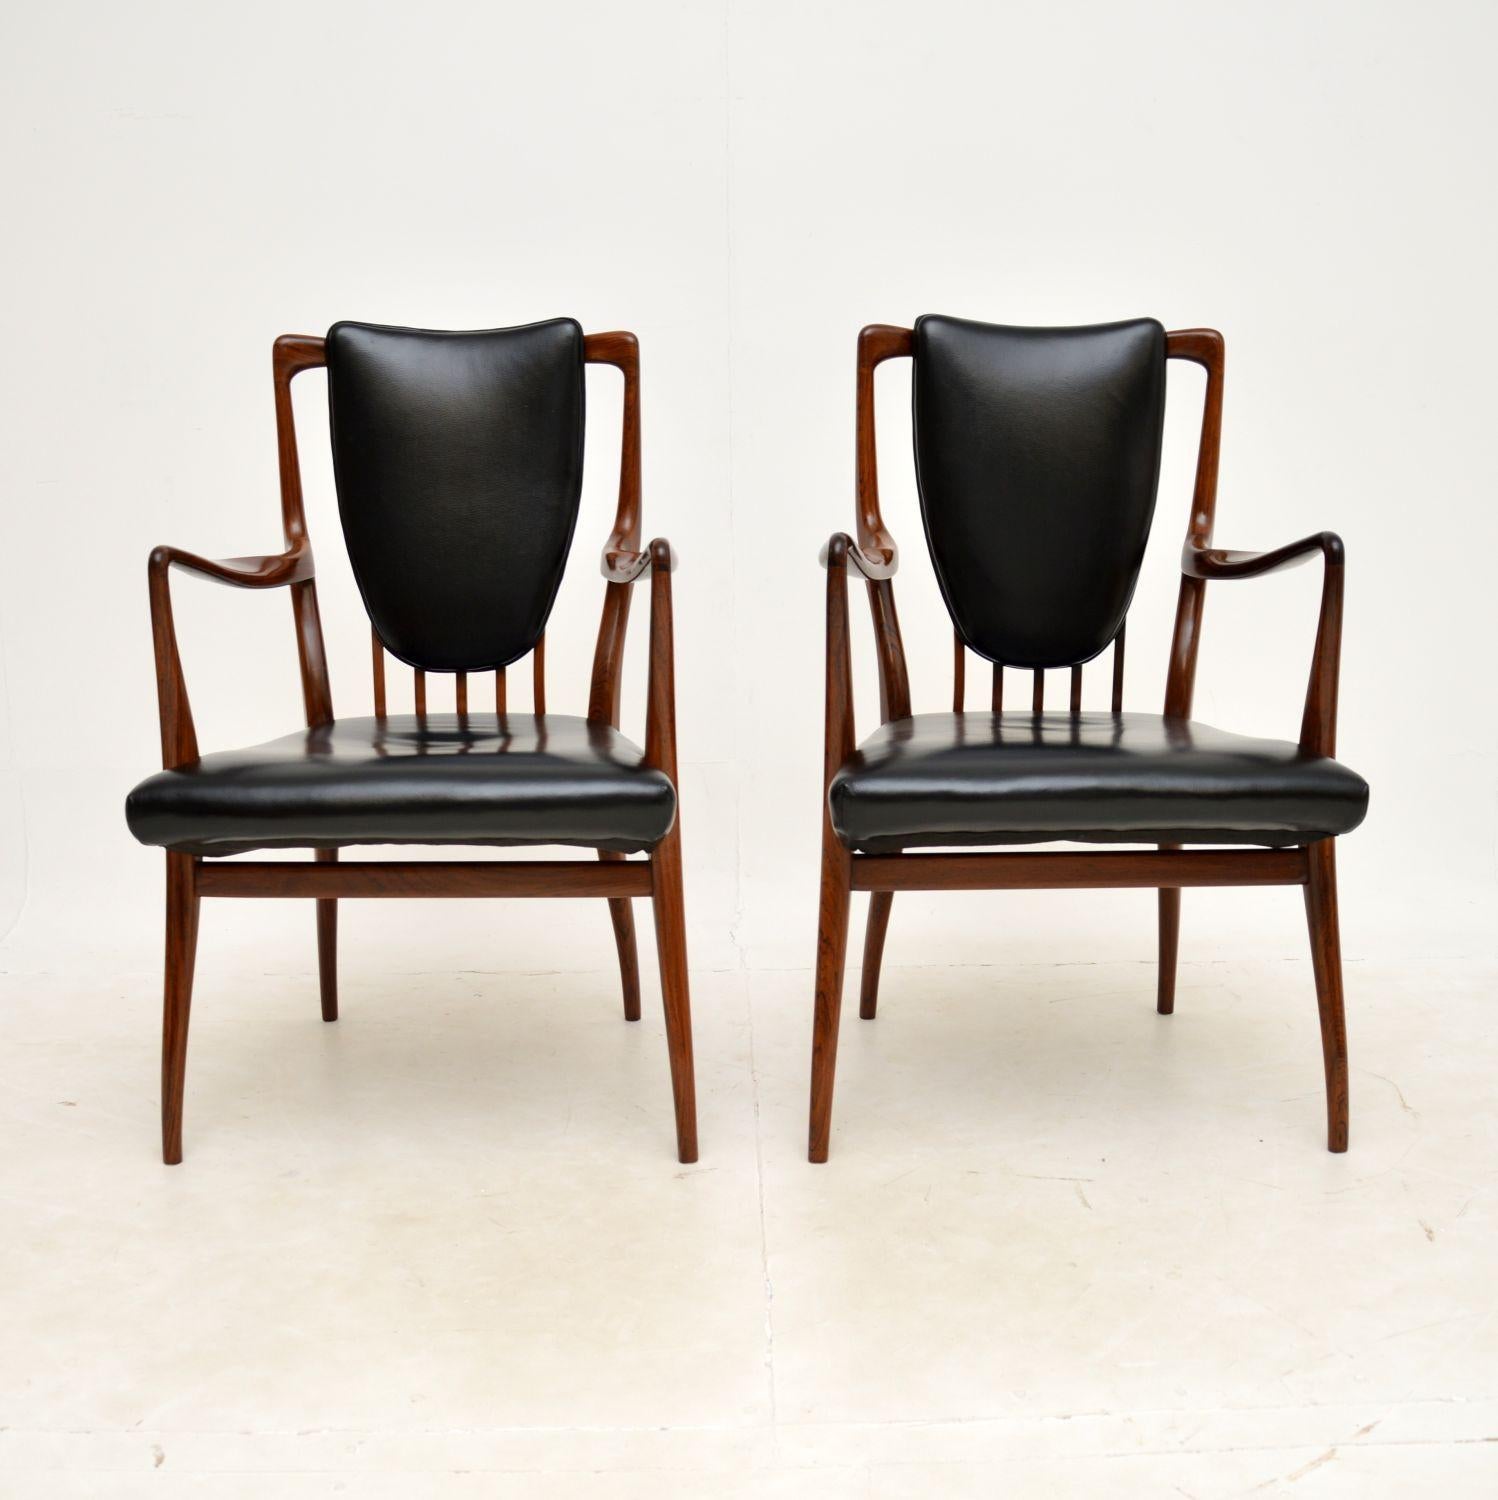 Une paire de chaises de sculpteur absolument stupéfiante et très rare par Andrew Milne. Ils ont été conçus dans les années 1940 pour Heal's, cette paire datant des années 1950.

Ils ont un design spectaculaire, et sont beaux sous tous les angles. La